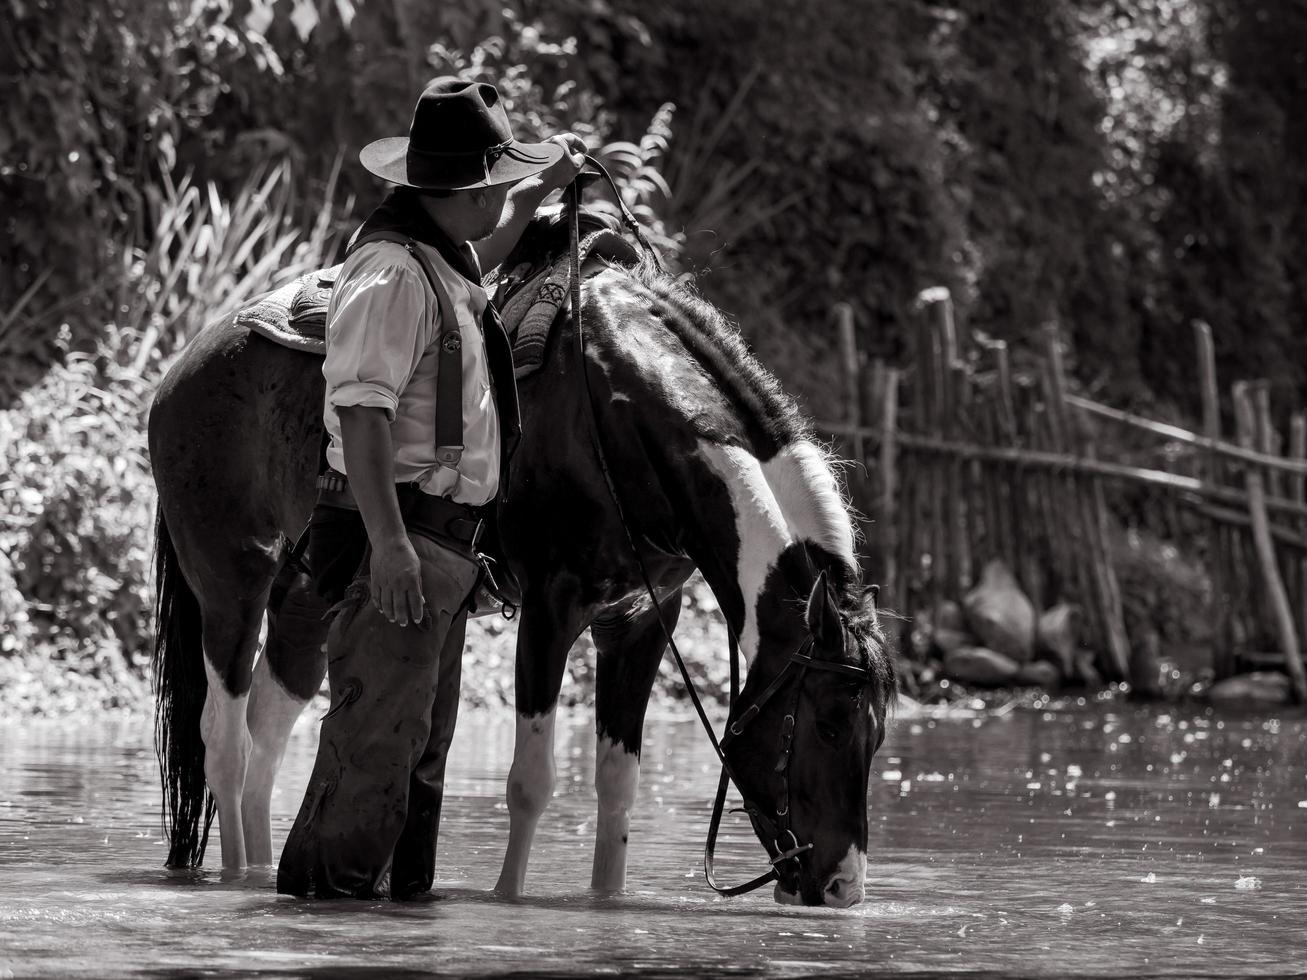 cowboys sênior descansando com cavalos e se banhando no rio foto